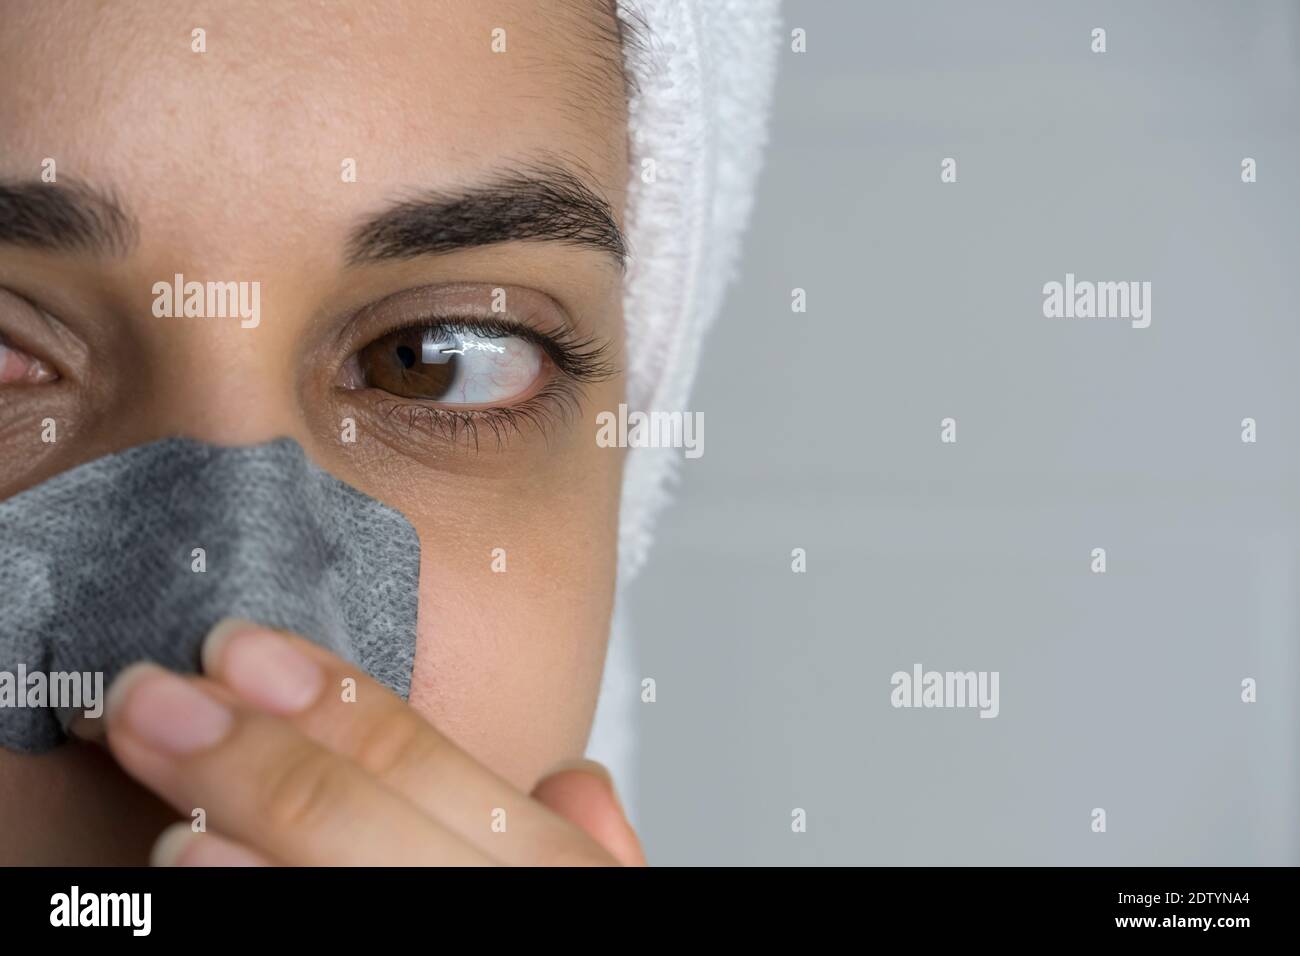 Une femme colle une bande de nettoyage sur son nez. Points noirs sur le nez. Fille sans maquillage dans la salle de bains. Soins de la peau, problèmes de peau, nettoyage. Naturel Banque D'Images